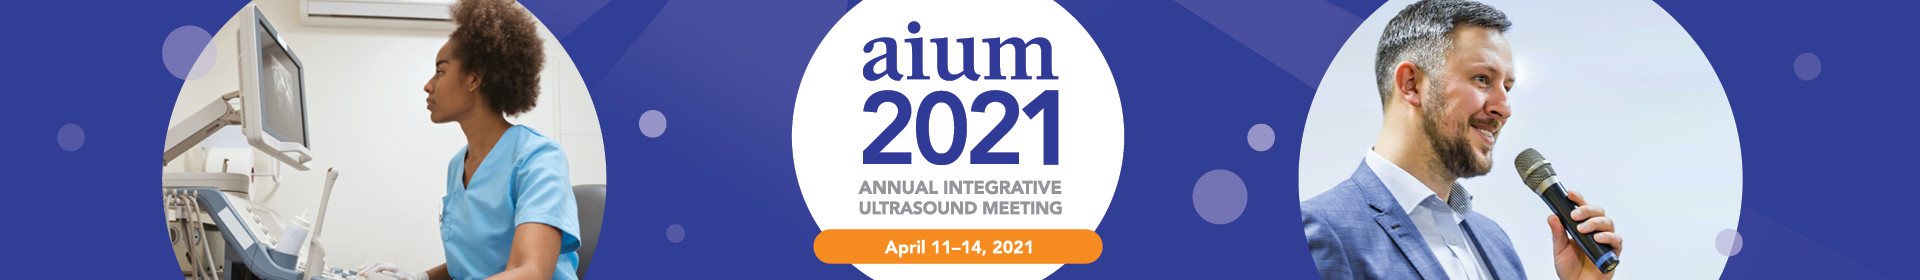 AIUM 2021 Event Banner